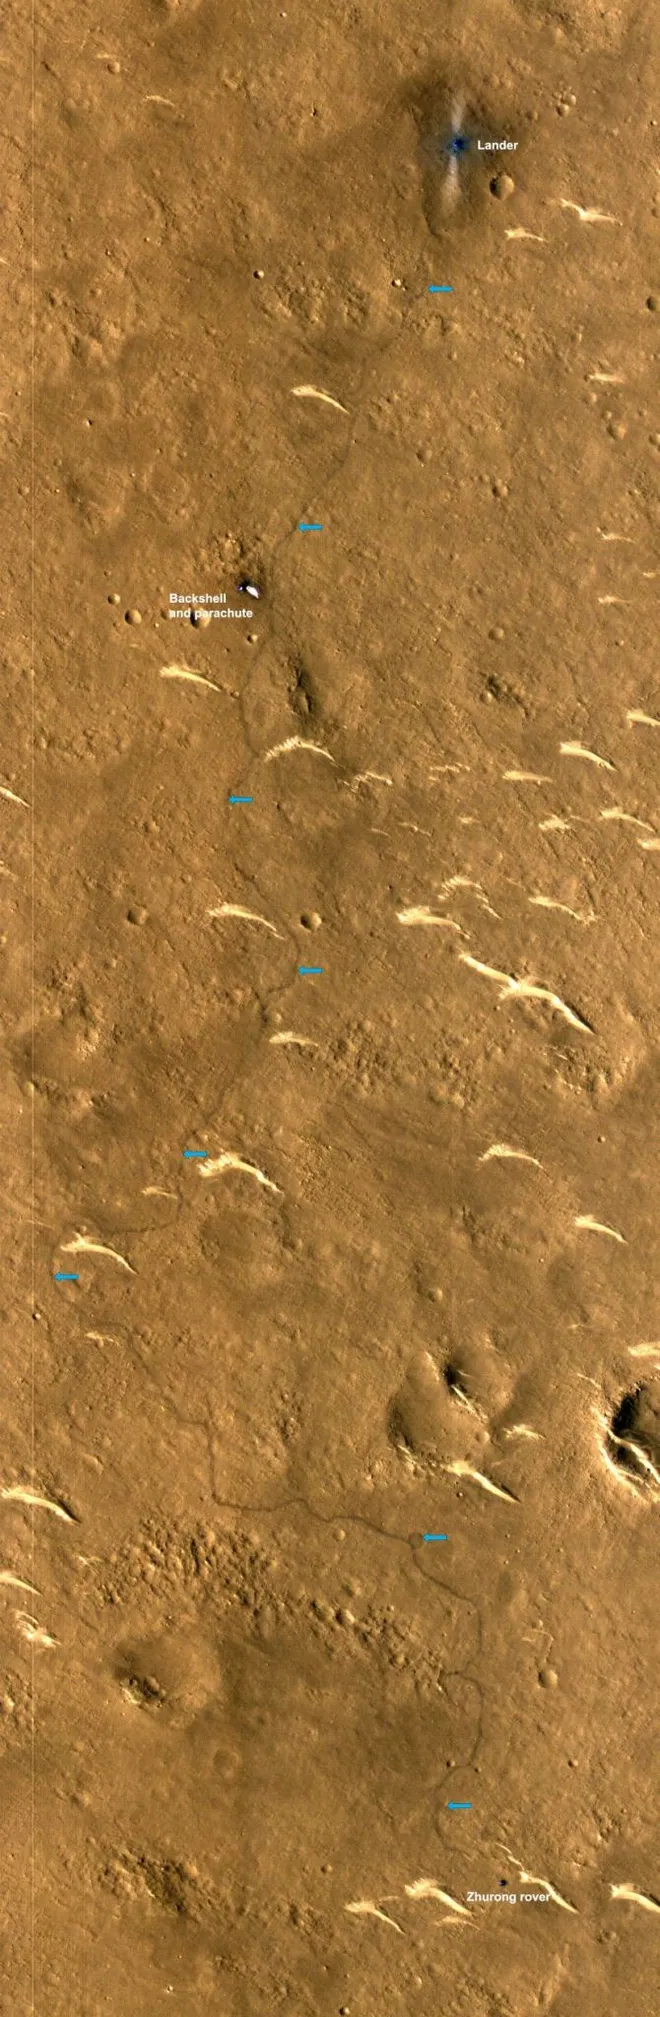 Detalhe de uma das fotos da MRO, com os rastros do rover Zhurong e sua localização mais recente (Imagem: Reprodução/NASA/JPL/UArizona)